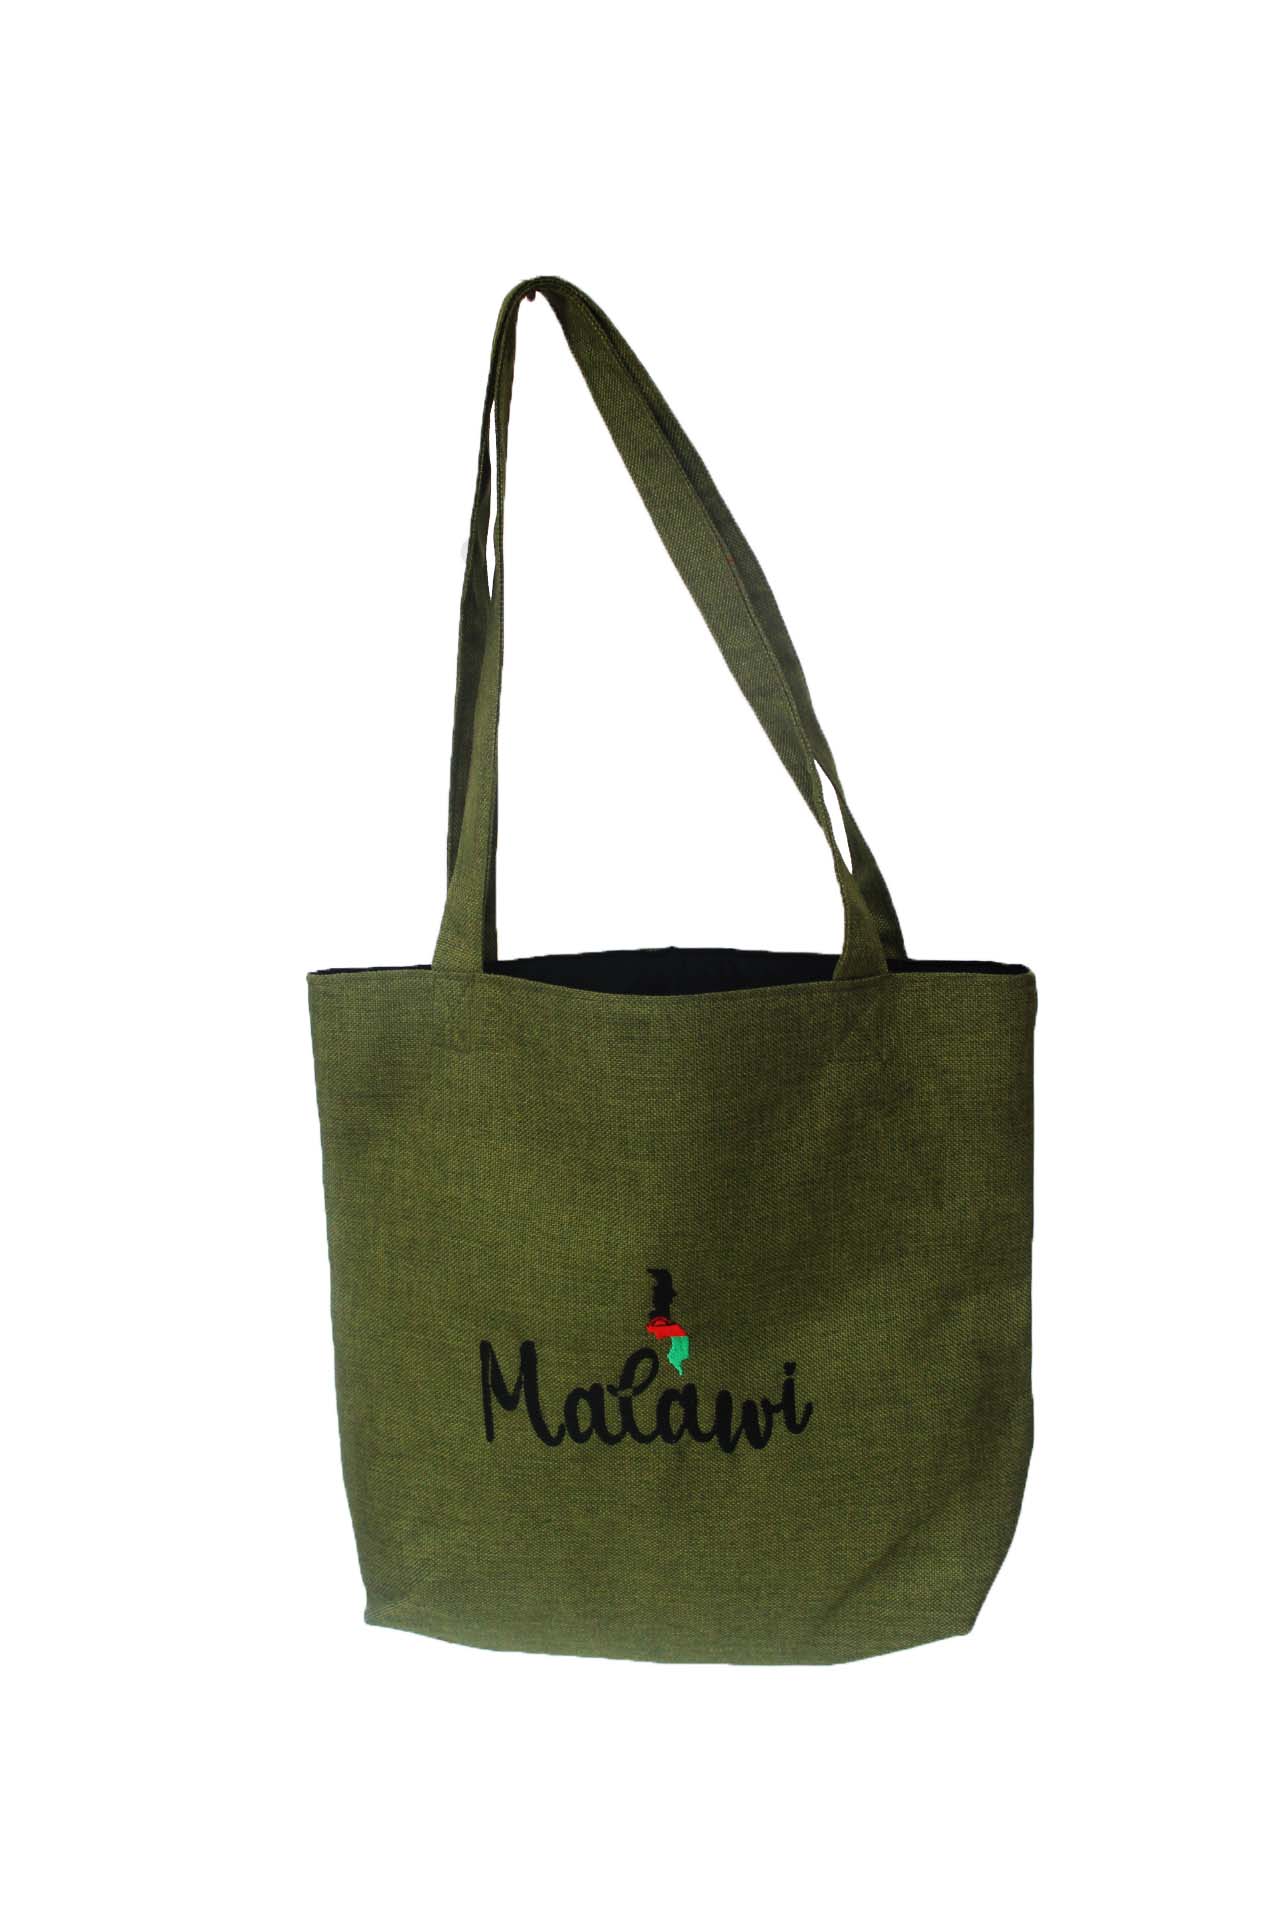 Malawi Shopping Bag/ Shoulder Bag